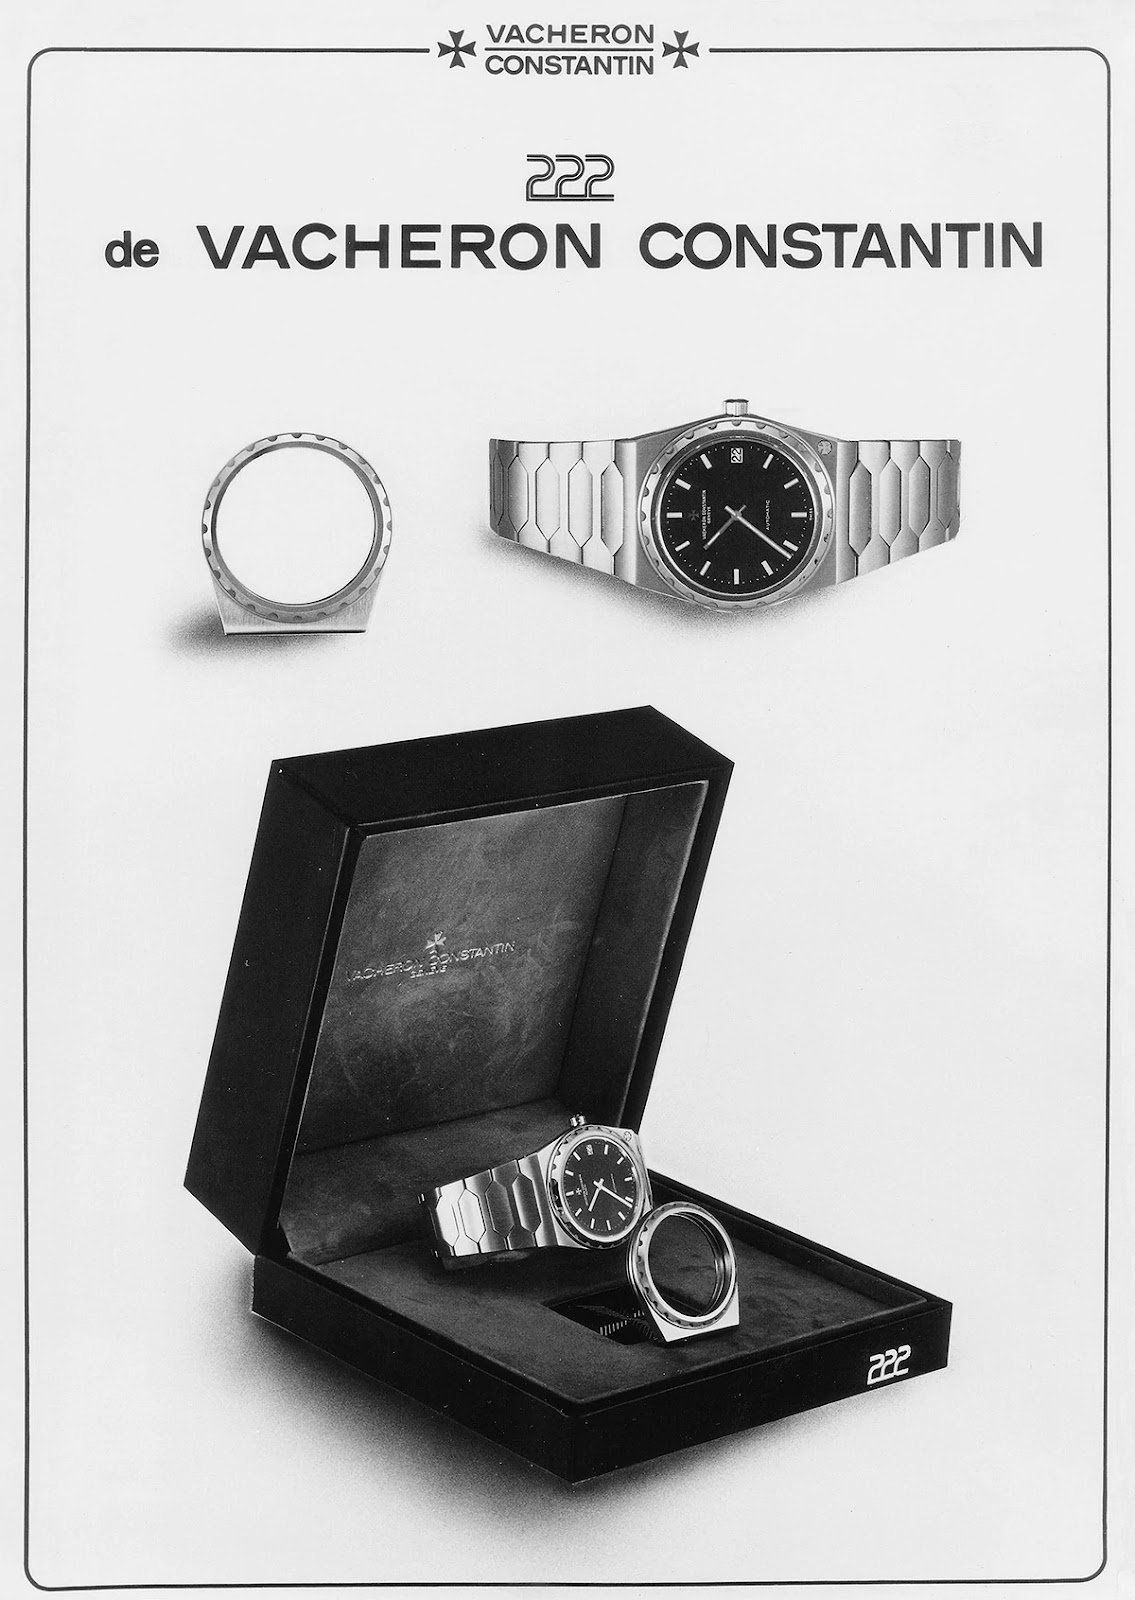 The Original Vacheron Constantin 222